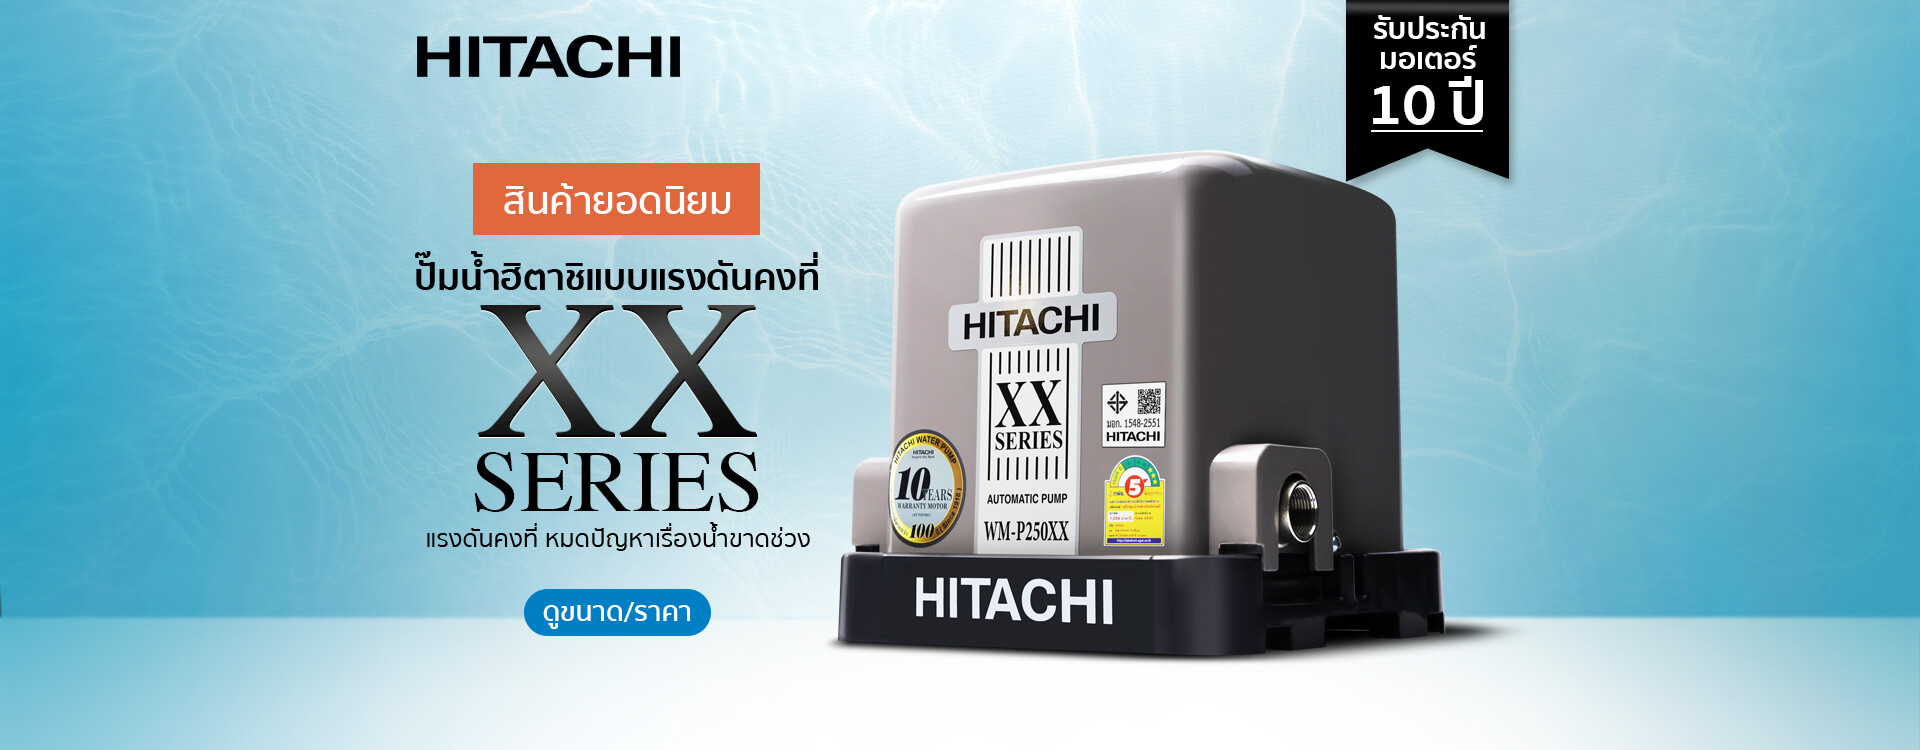 ปั๊มน้ำ-Hitachi-แรงดันคงที่-Toyobo-2022